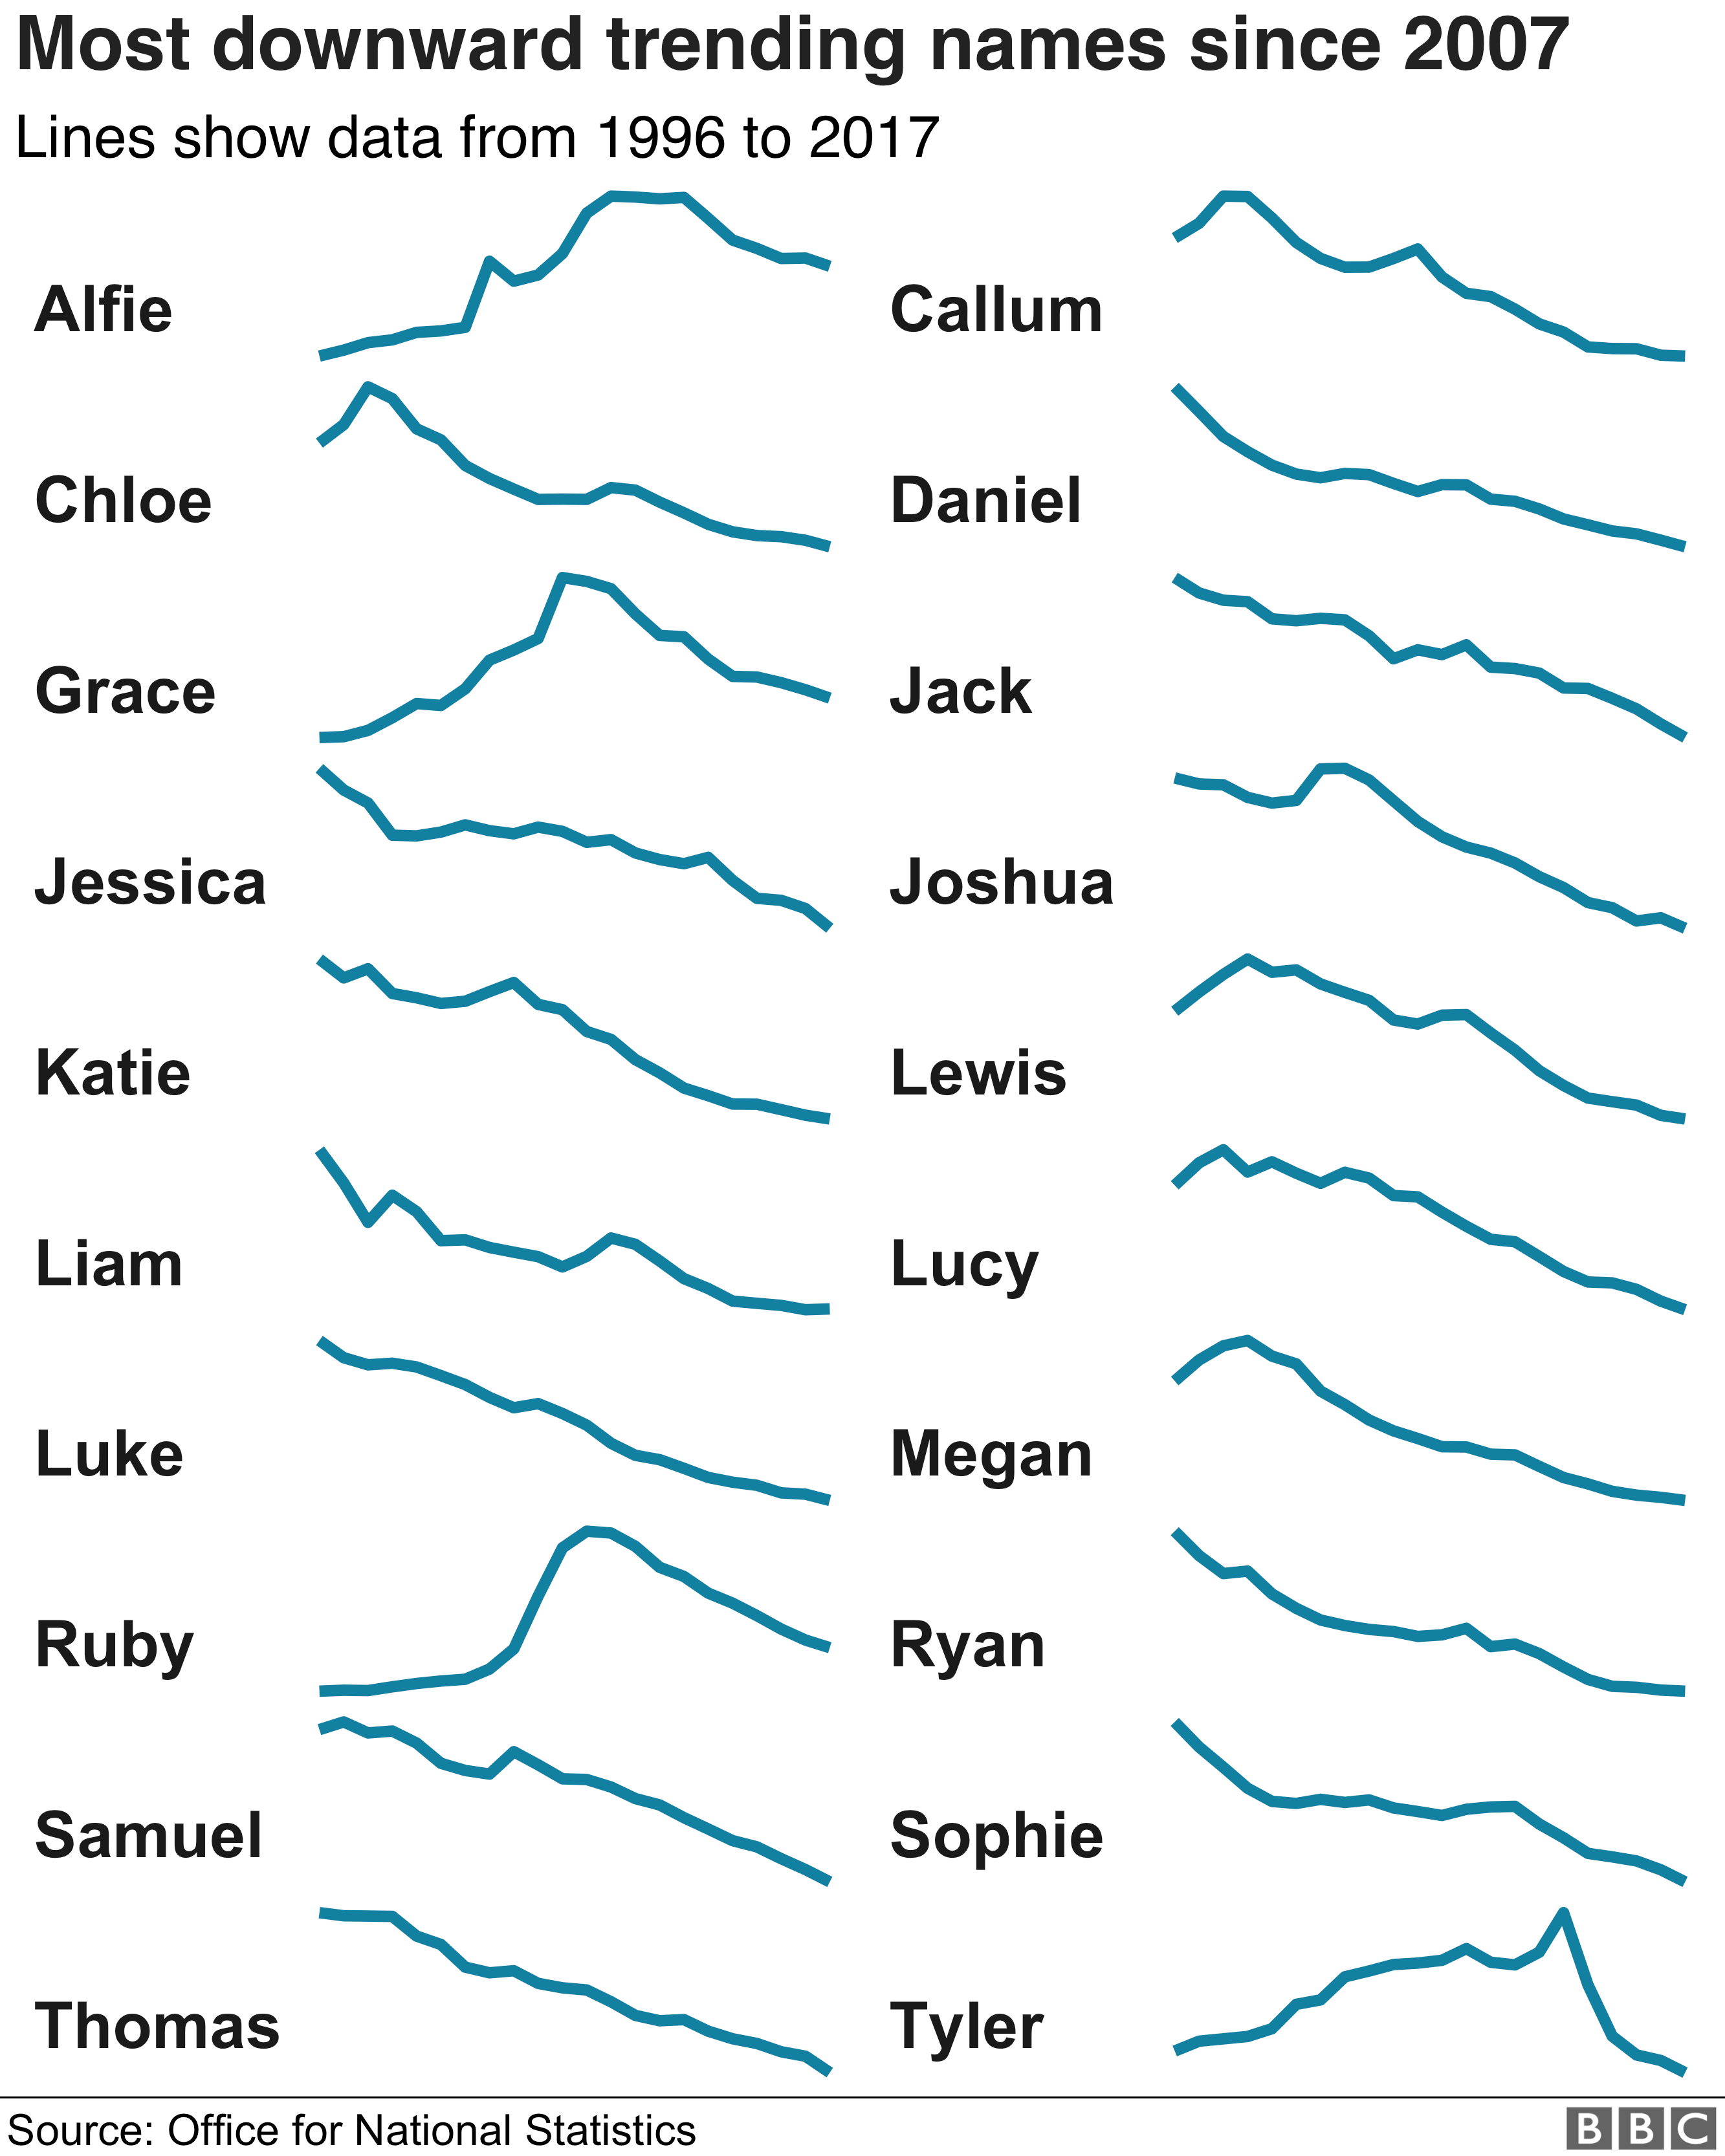 Диаграмма, показывающая снижение популярности имен